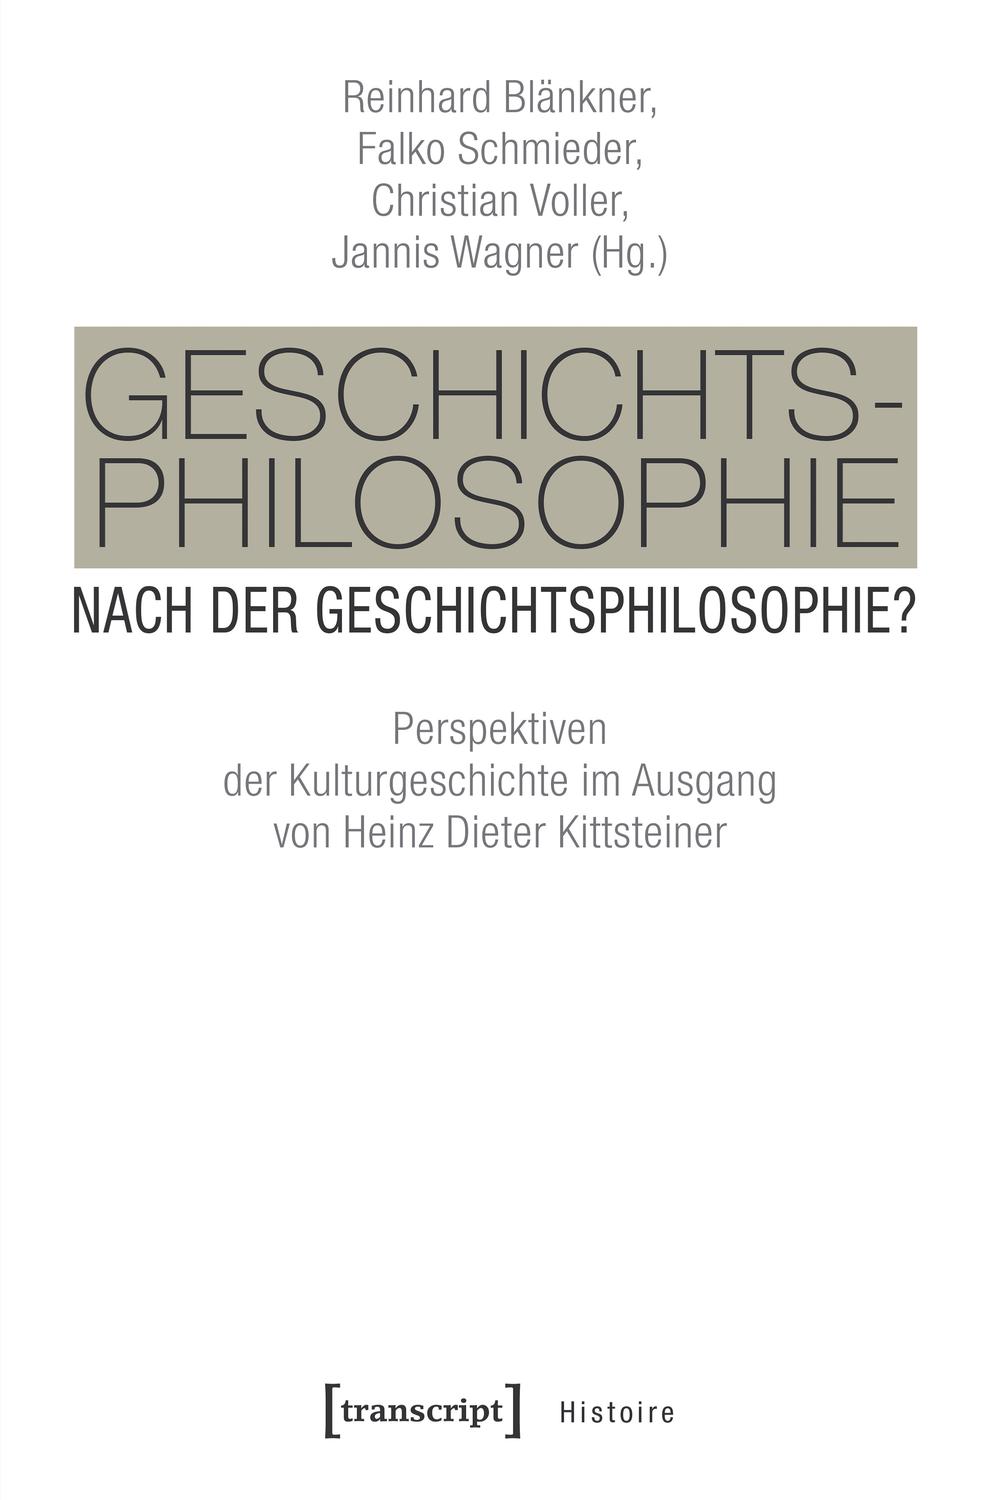 Geschichtsphilosophie nach der Geschichtsphilosophie? - Reinhard Blänkner, Falko Schmieder, Christian Voller, Jannis Wagner